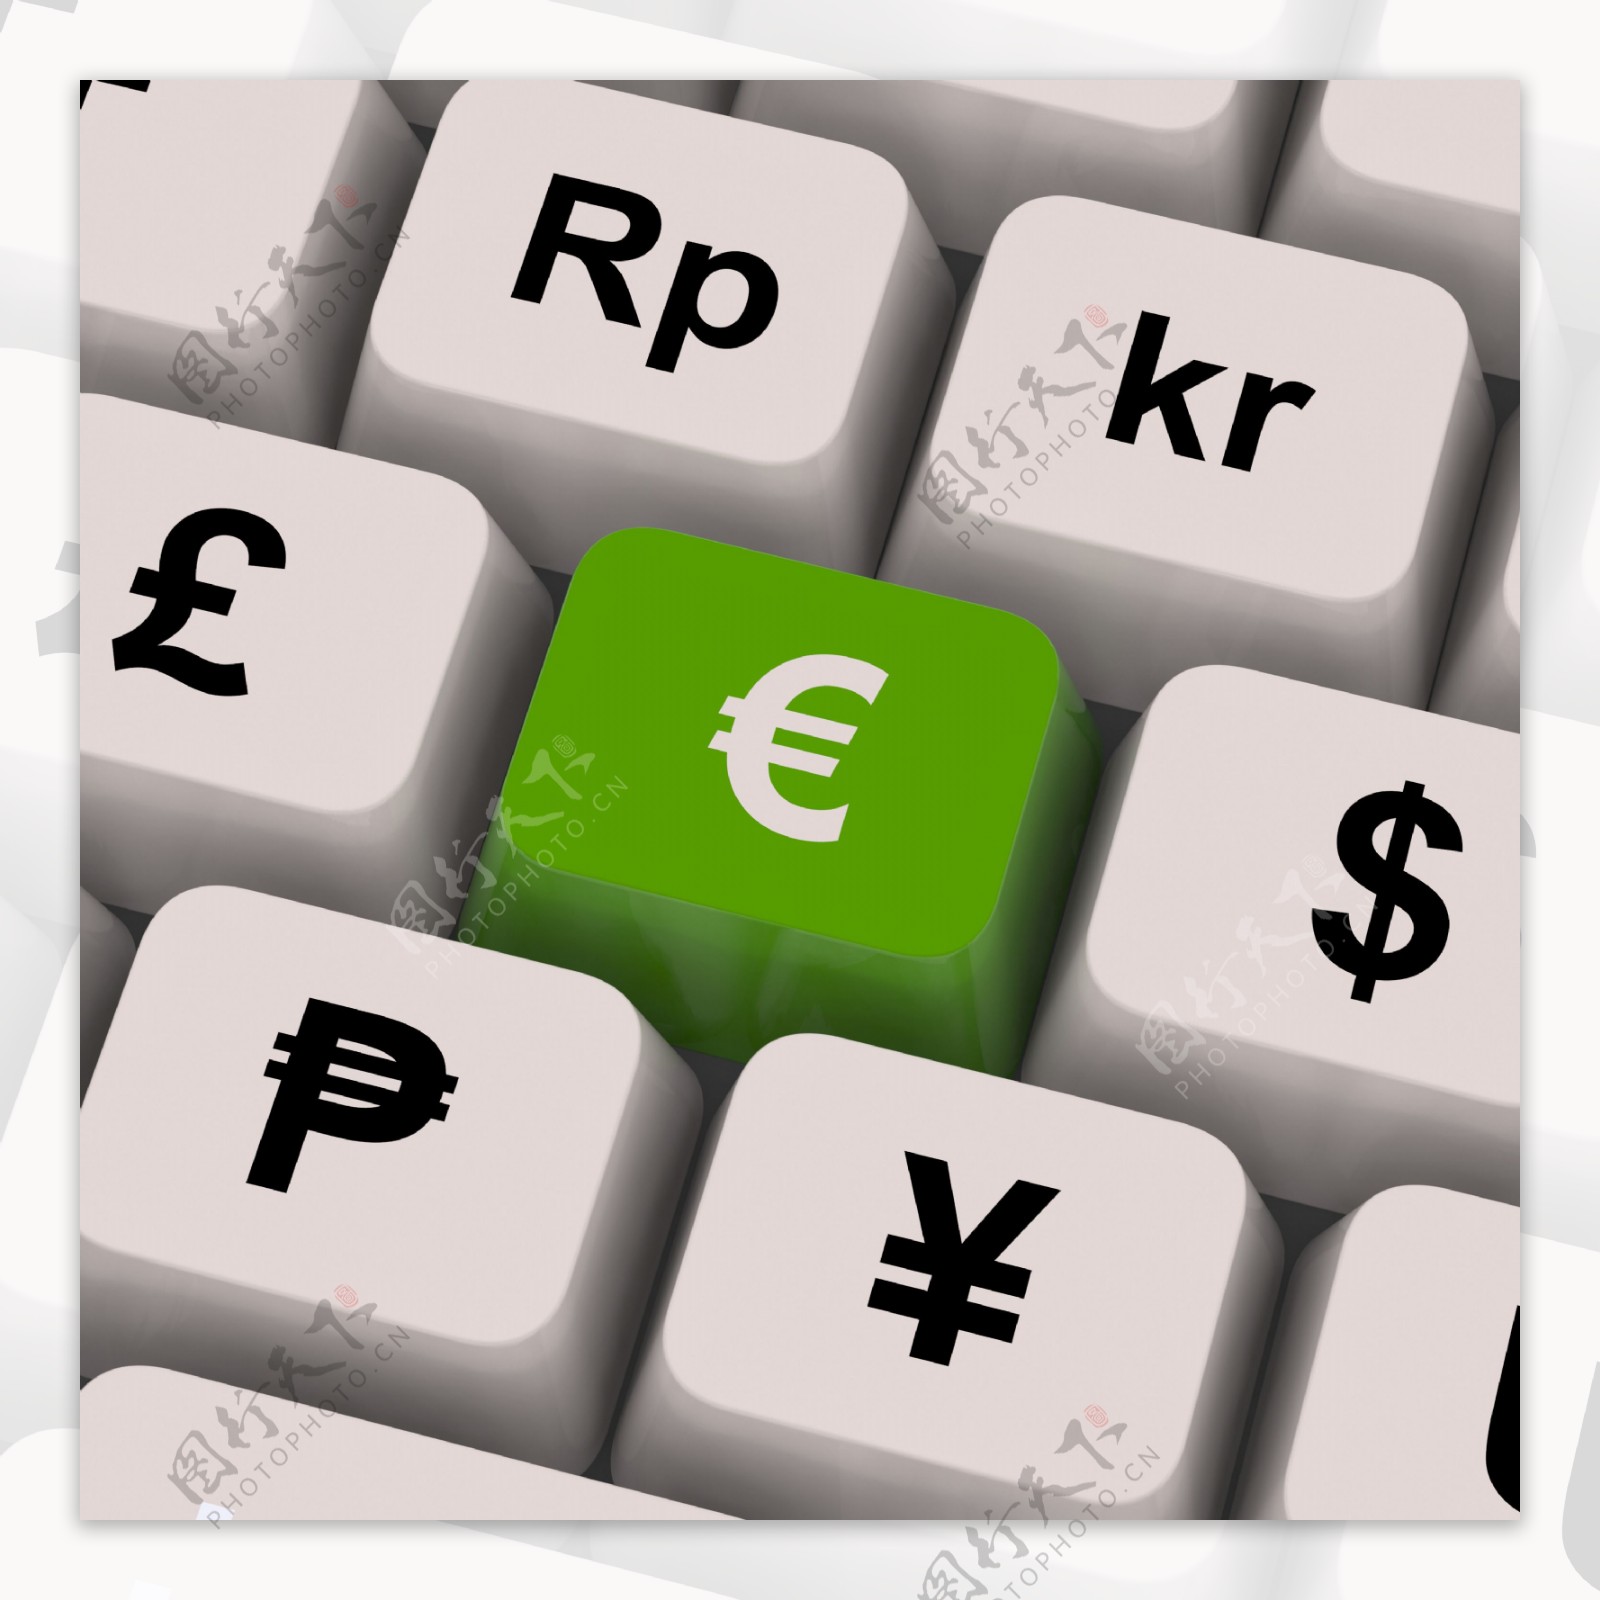 欧元和货币兑换外汇的键显示